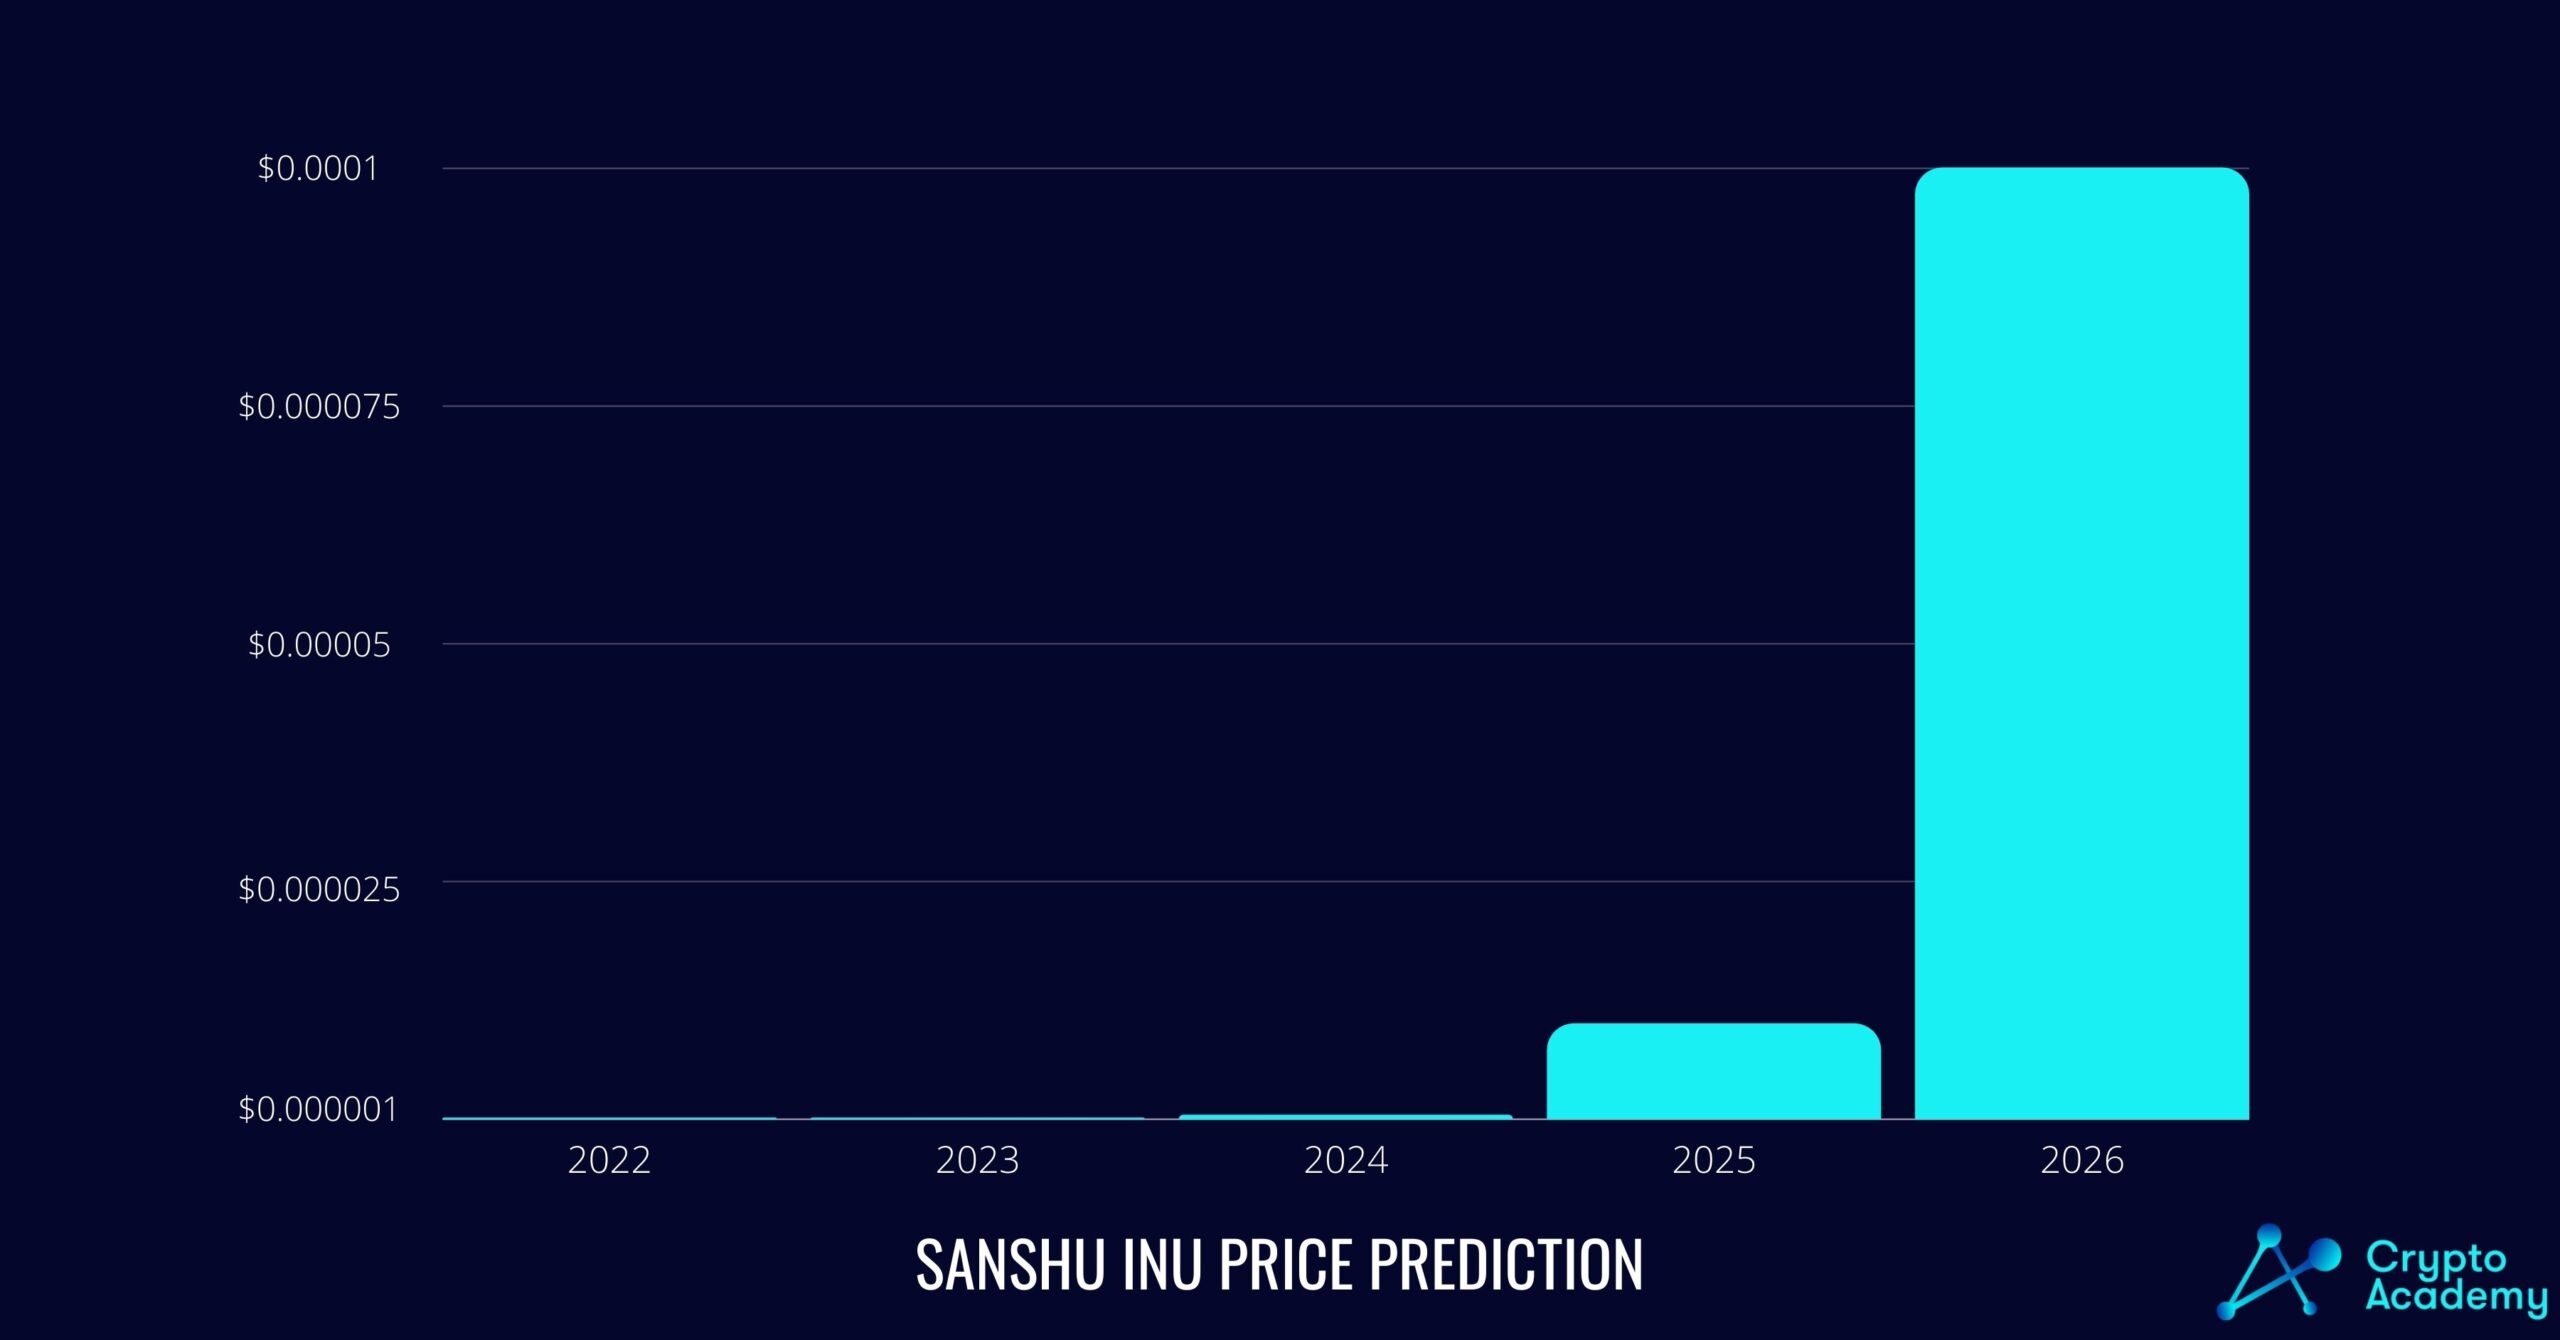 Crypto Academy price prediction for Sanshu Inu (SANSHU)